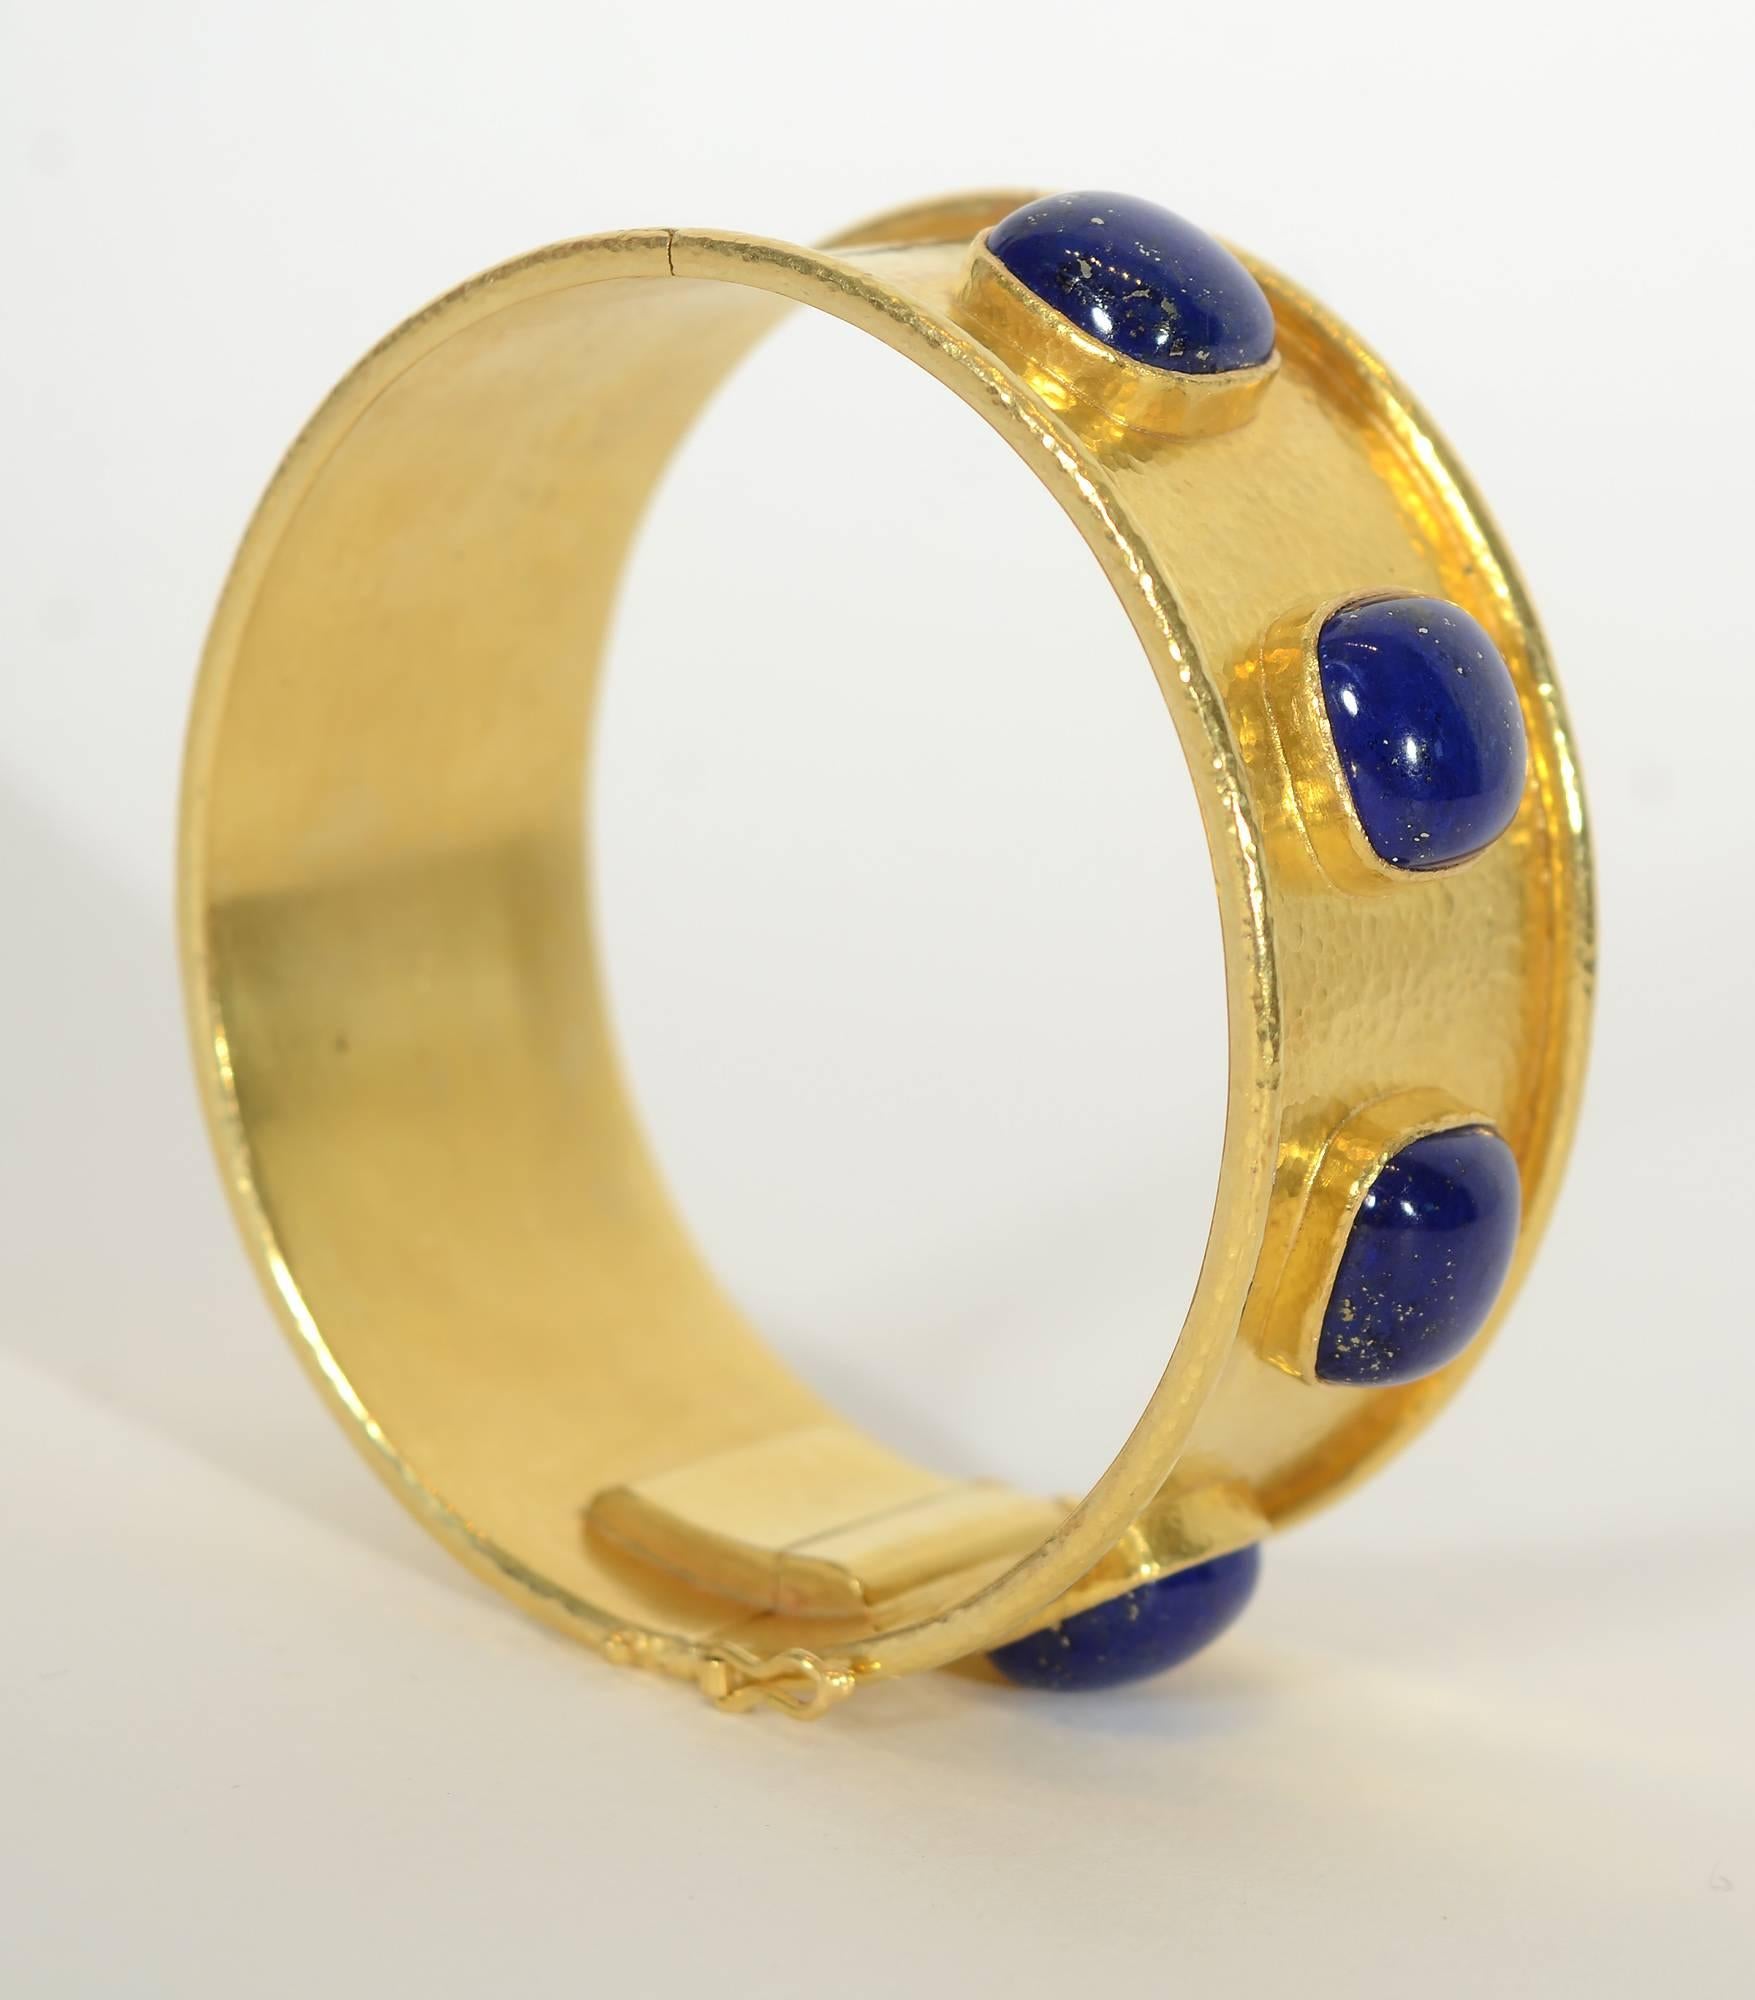 Atemberaubend  Breites Goldarmband von Elizabeth Locke mit vier Cabochon-Lapis-Lazuli-Steinen. Die Steine haben alle eine quadratische Form. Das Armband ist mit der für Locke typischen gehämmerten Goldoberfläche versehen und mit Bandkanten versehen.